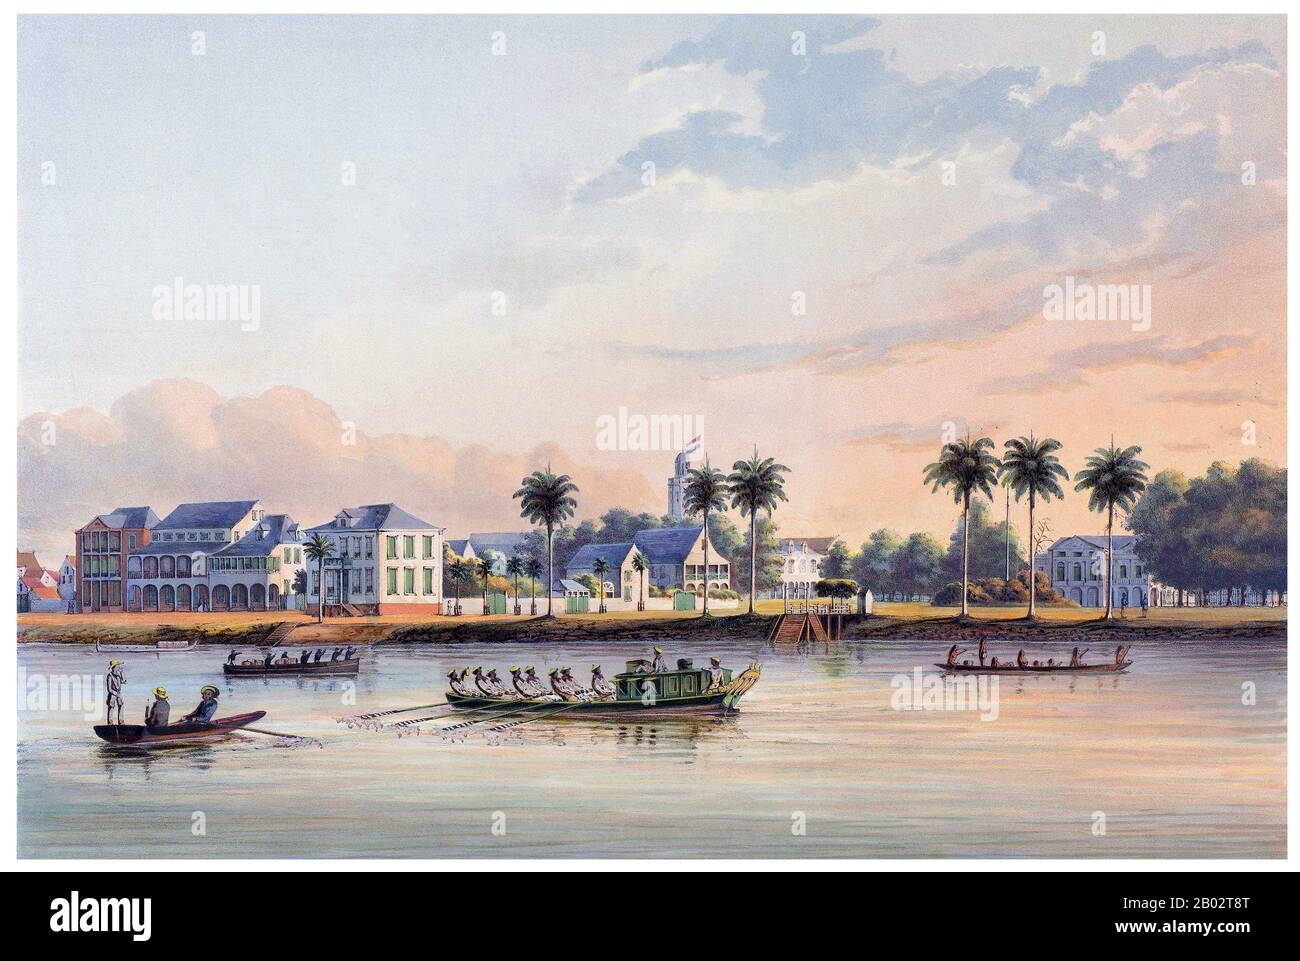 Le plus petit pays d'Amérique du Sud, la diversité du Suriname a commencé au XVIe siècle lorsque des explorateurs français, espagnols et anglais ont visité la région. Un siècle plus tard, les colonies de plantations ont été établies par les Néerlandais et les Anglais le long des nombreux fleuves dans les plaines fertiles du Guyana. Des différends se sont posés, comme jamais, entre les Néerlandais et les Anglais. En 1667, les Pays-Bas décidèrent de garder l'anglais de la colonie naissante de plantations du Suriname, issue du Traité de Breda. Les Anglais ont été laissés à New Amsterdam, un petit poste commercial en Amérique du Nord, qui est devenu plus tard New York City. En tant que plantation Banque D'Images